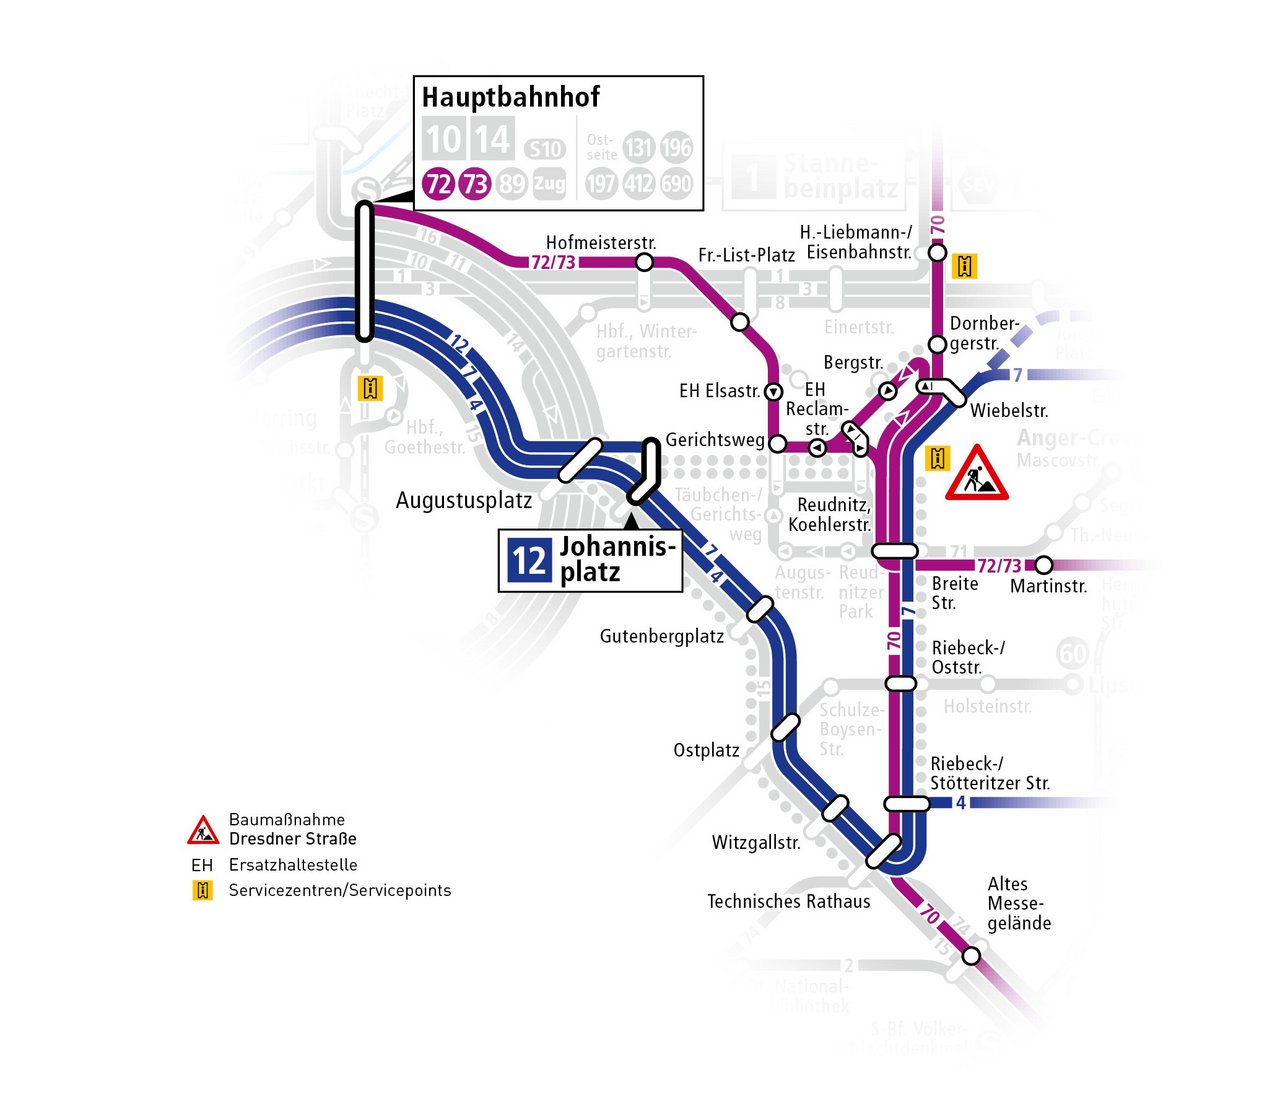 Karte der ÖPNV Änderungen in Phase 4 Baumaßnahme Dresdner Straße